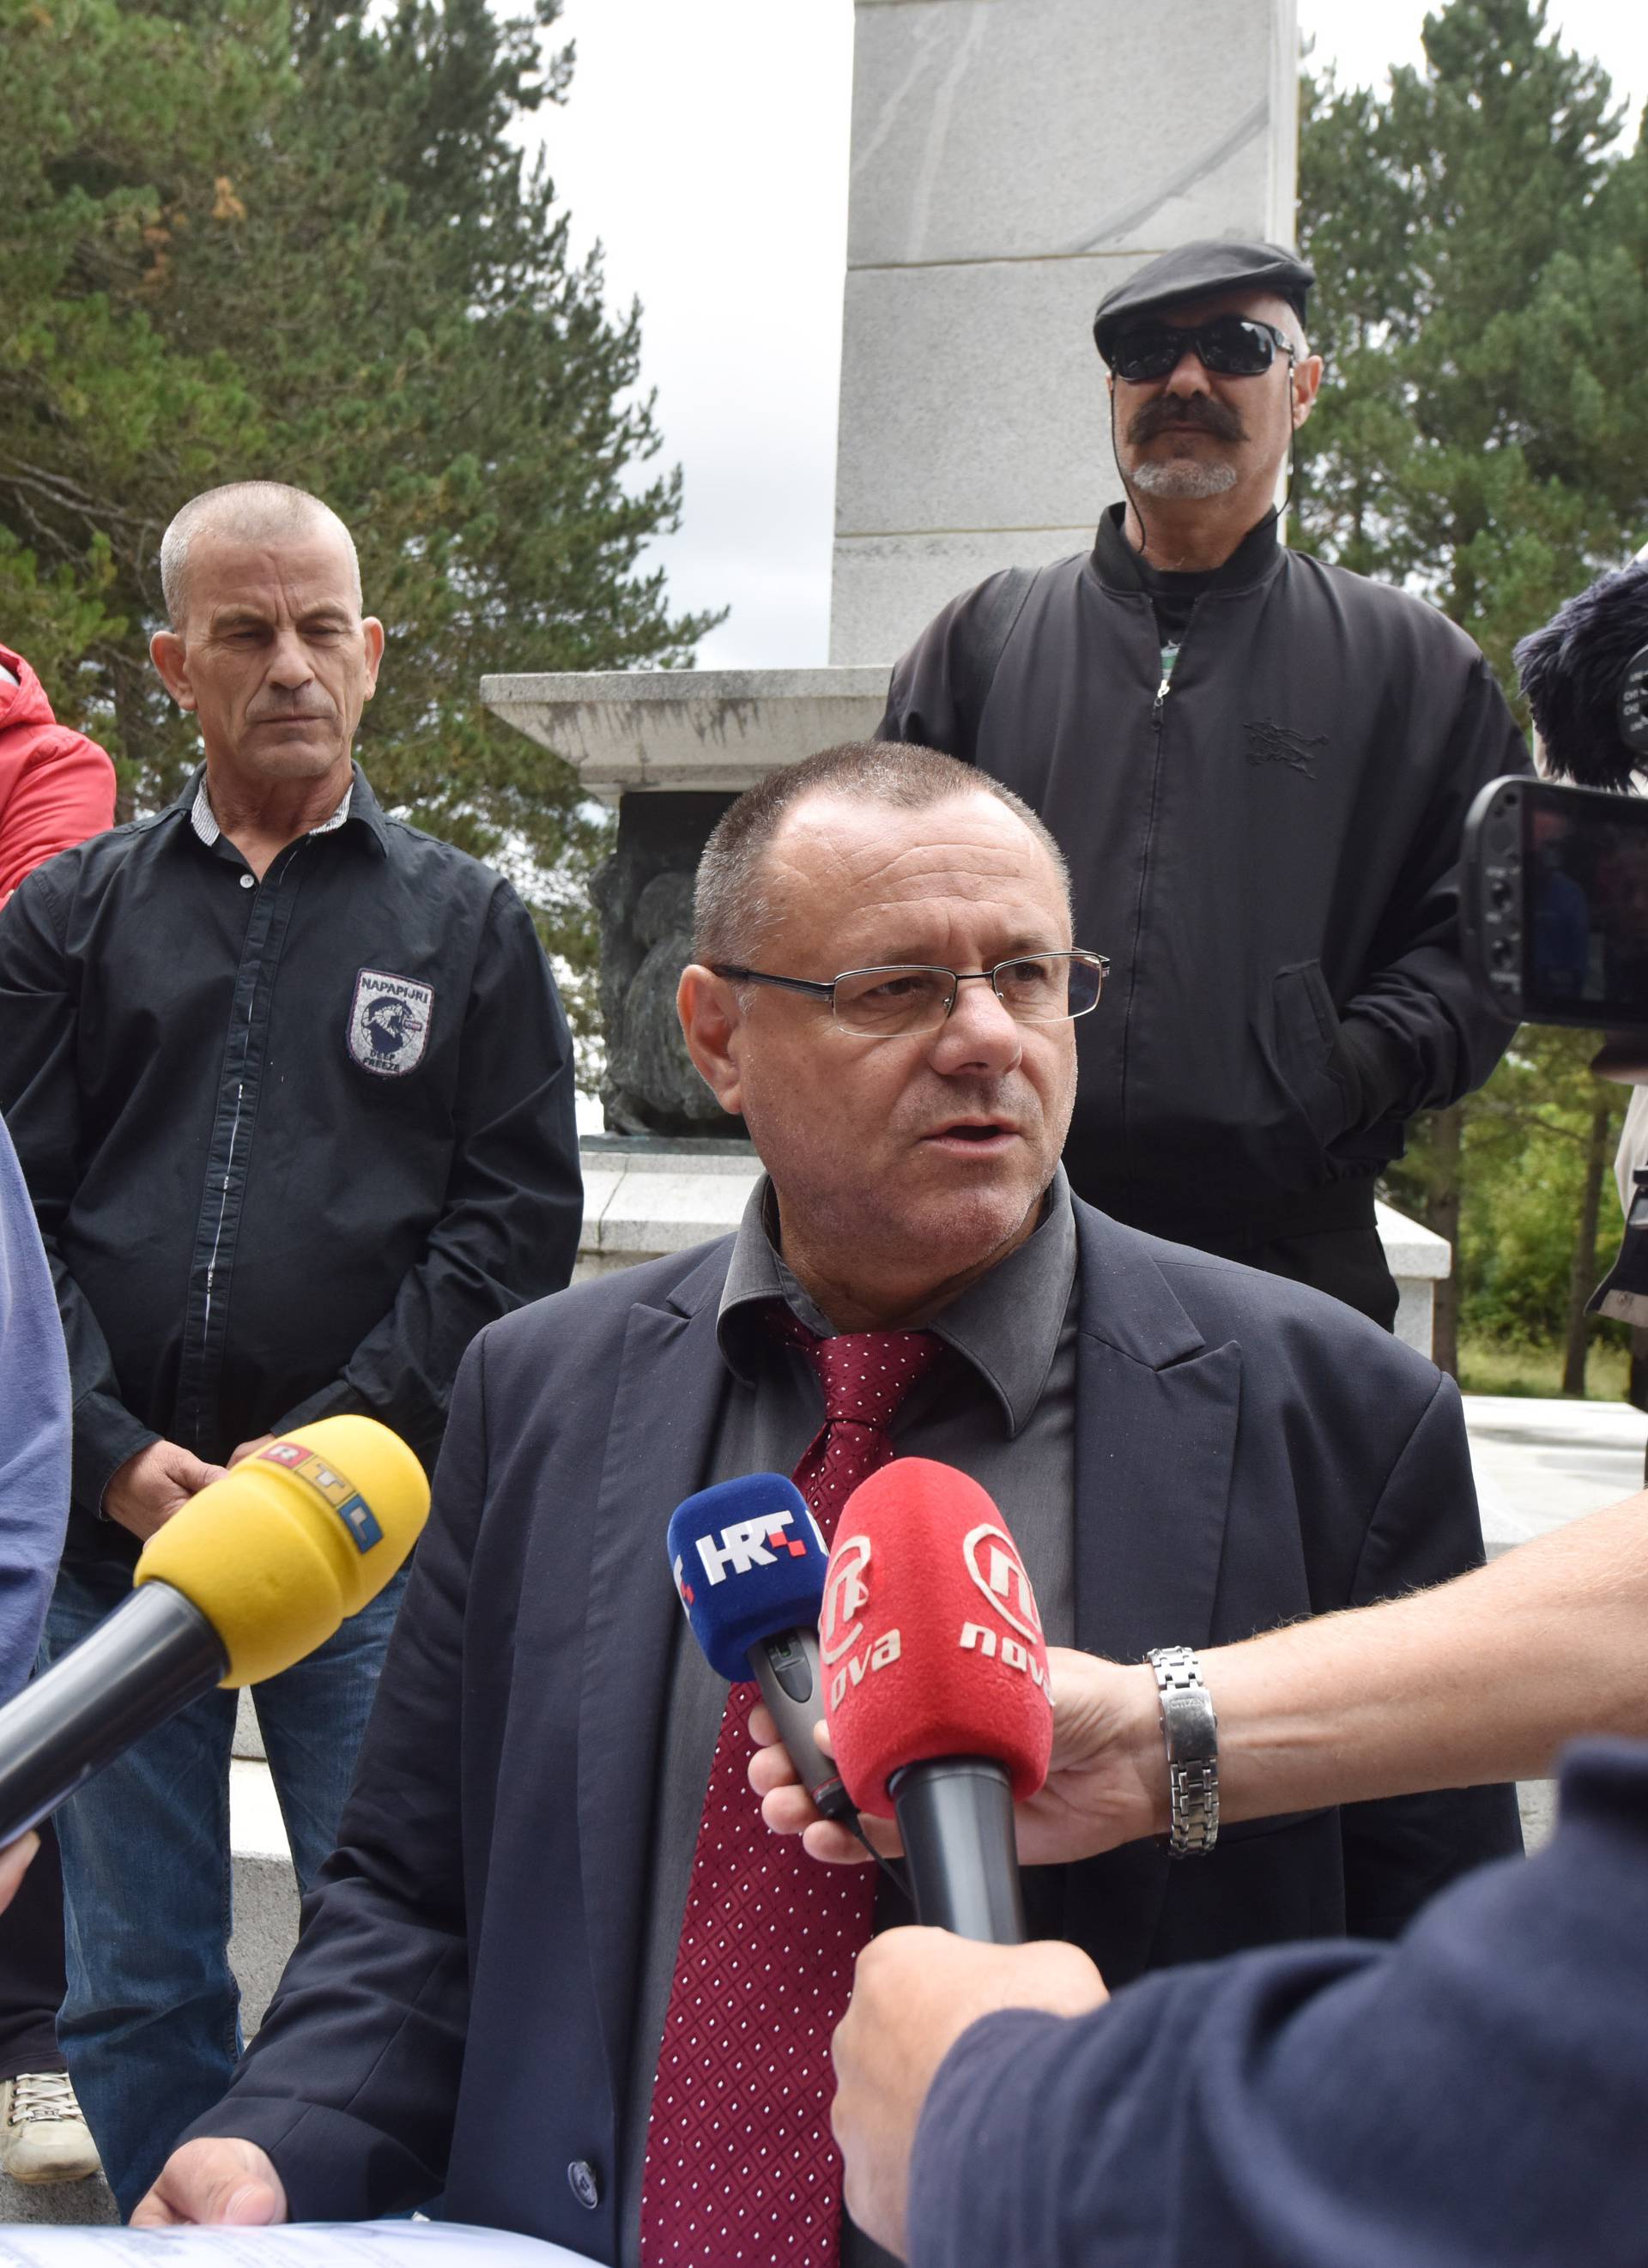 Održao konferenciju: Keleminec traži rušenje spomenika u Srbu